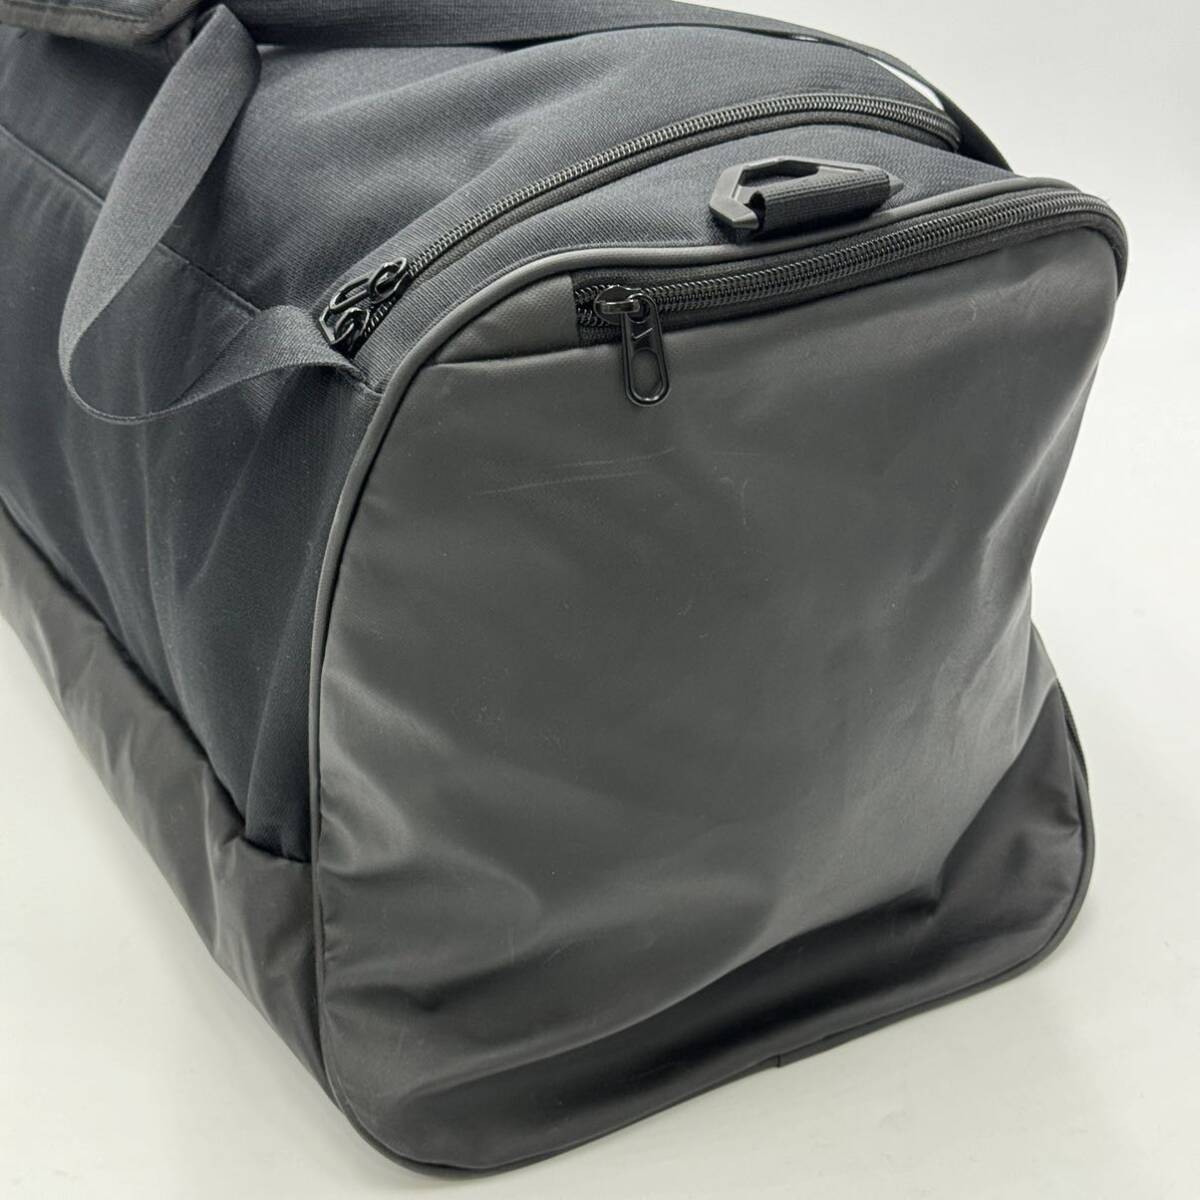 * хорошая вещь / популярный модель!! \'swoshu дизайн логотипа \' NIKE Nike большая вместимость da полный / сумка "Boston bag" ручная сумка плечо .. спорт сумка путешествие портфель 